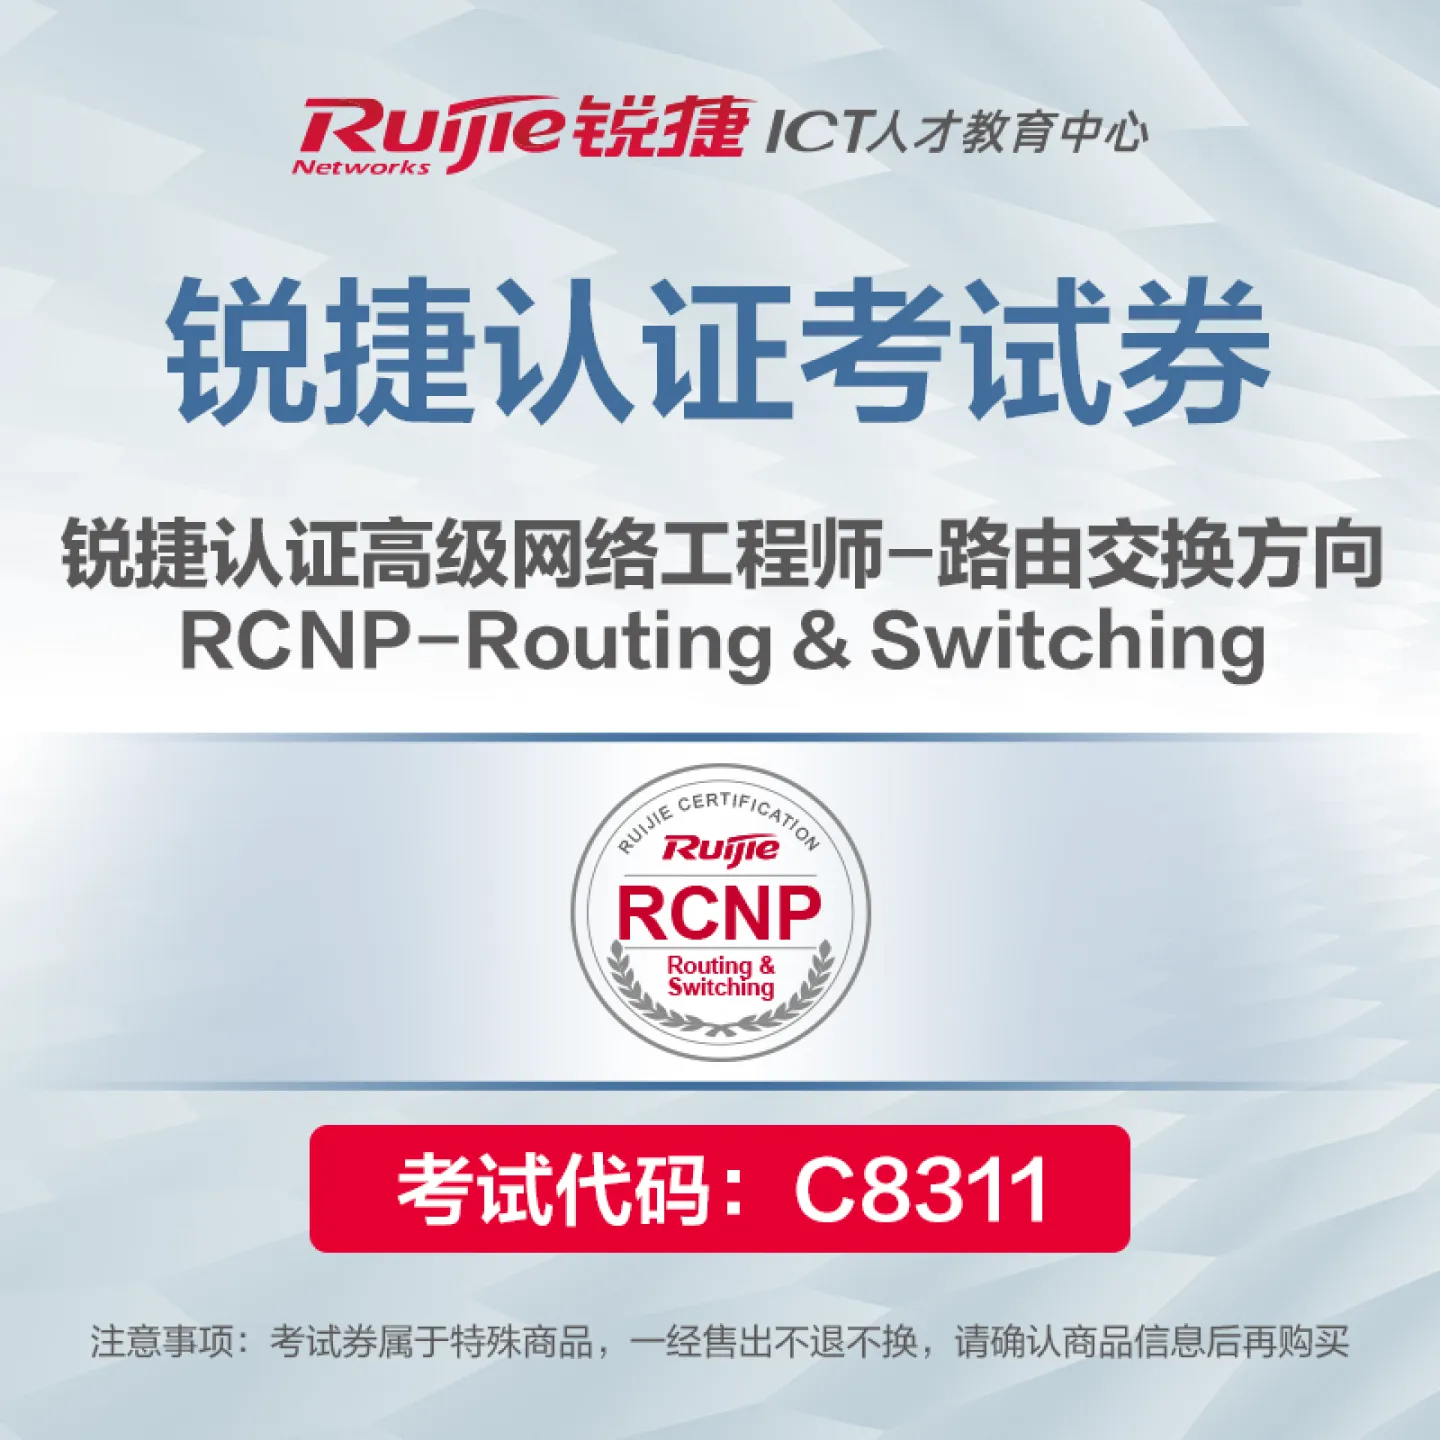 ����璇��搞��RCNP-Routing & Switching